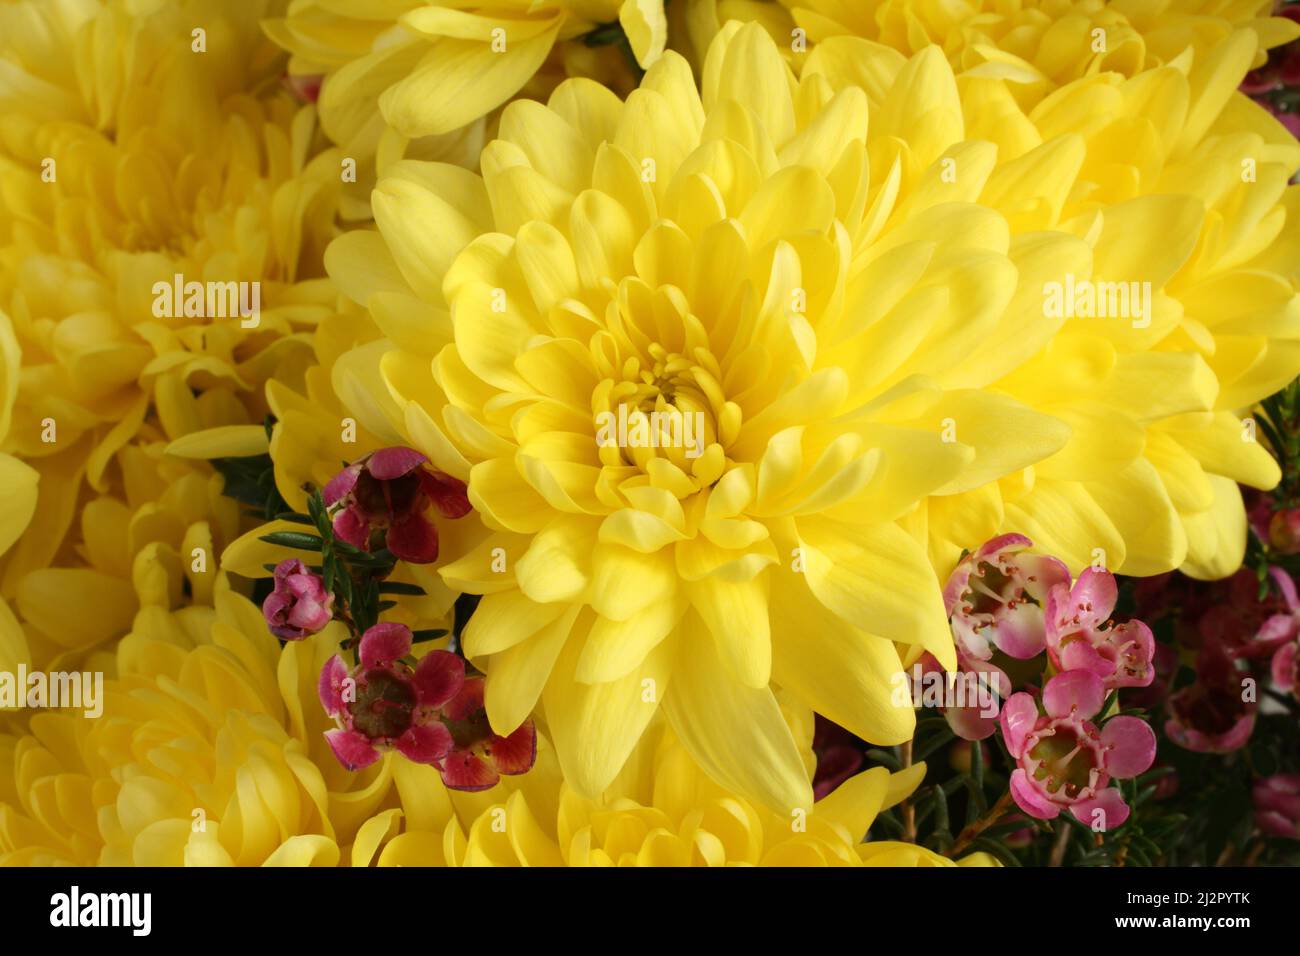 Bouquet von großen gelben Chrysanthemen mit kleinen burgunderroten Blüten. Nahaufnahme. Stockfoto